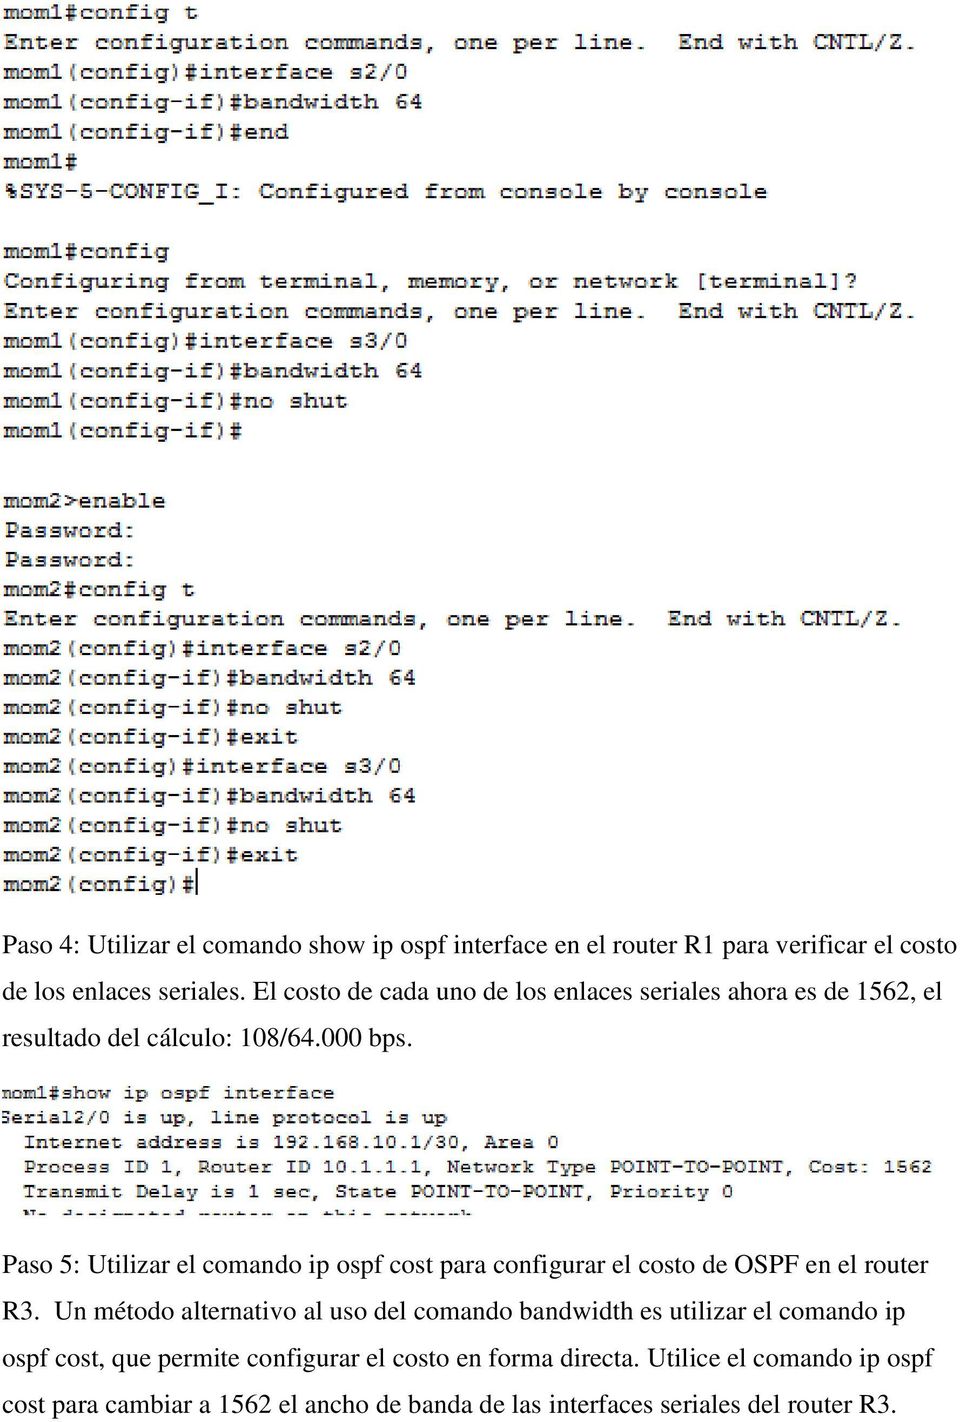 Paso 5: Utilizar el comando ip ospf cost para configurar el costo de OSPF en el router R3.